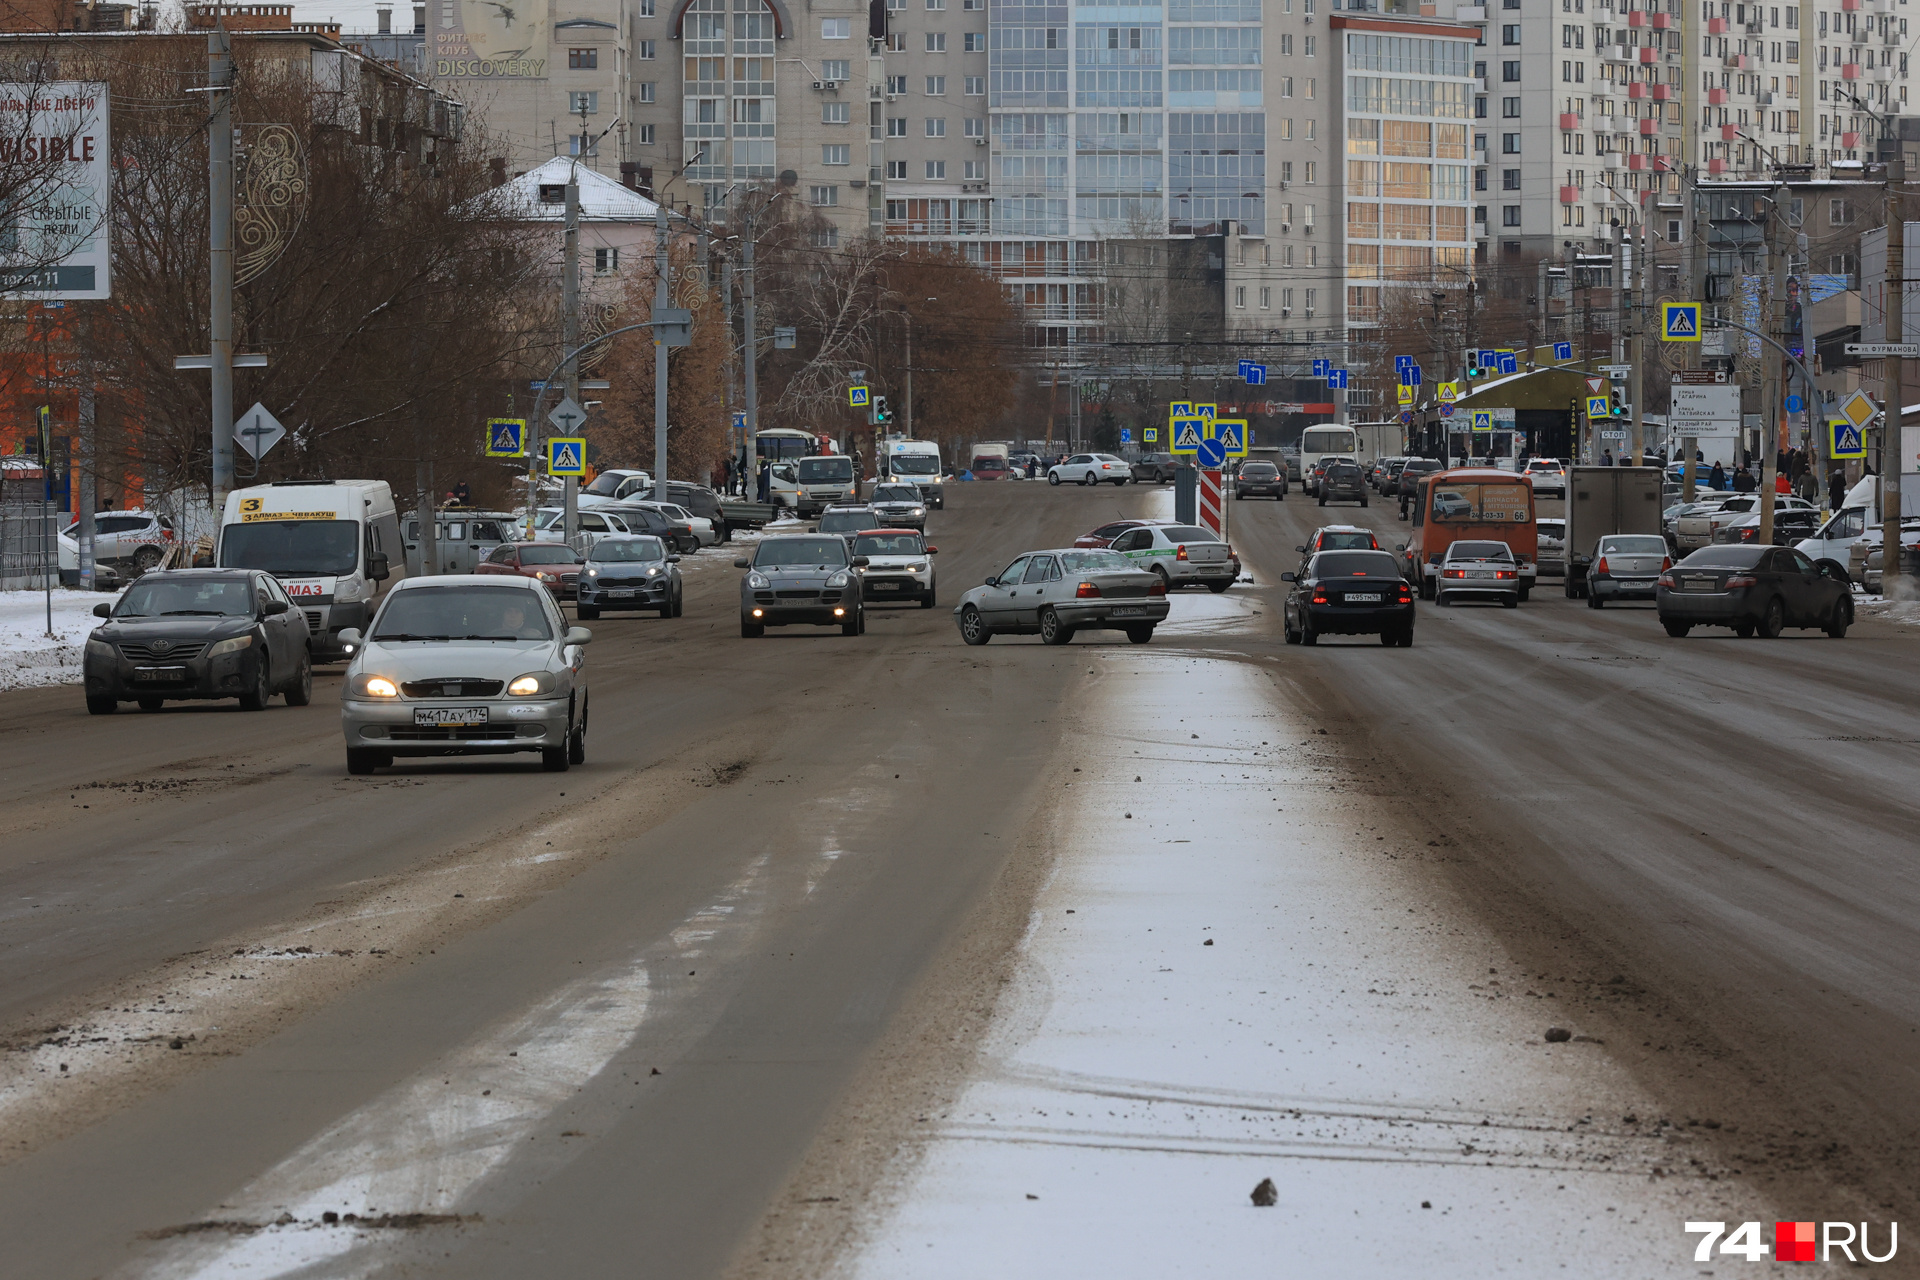 Улица Дзержинского вся в грязи, вплоть до улицы Гагарина